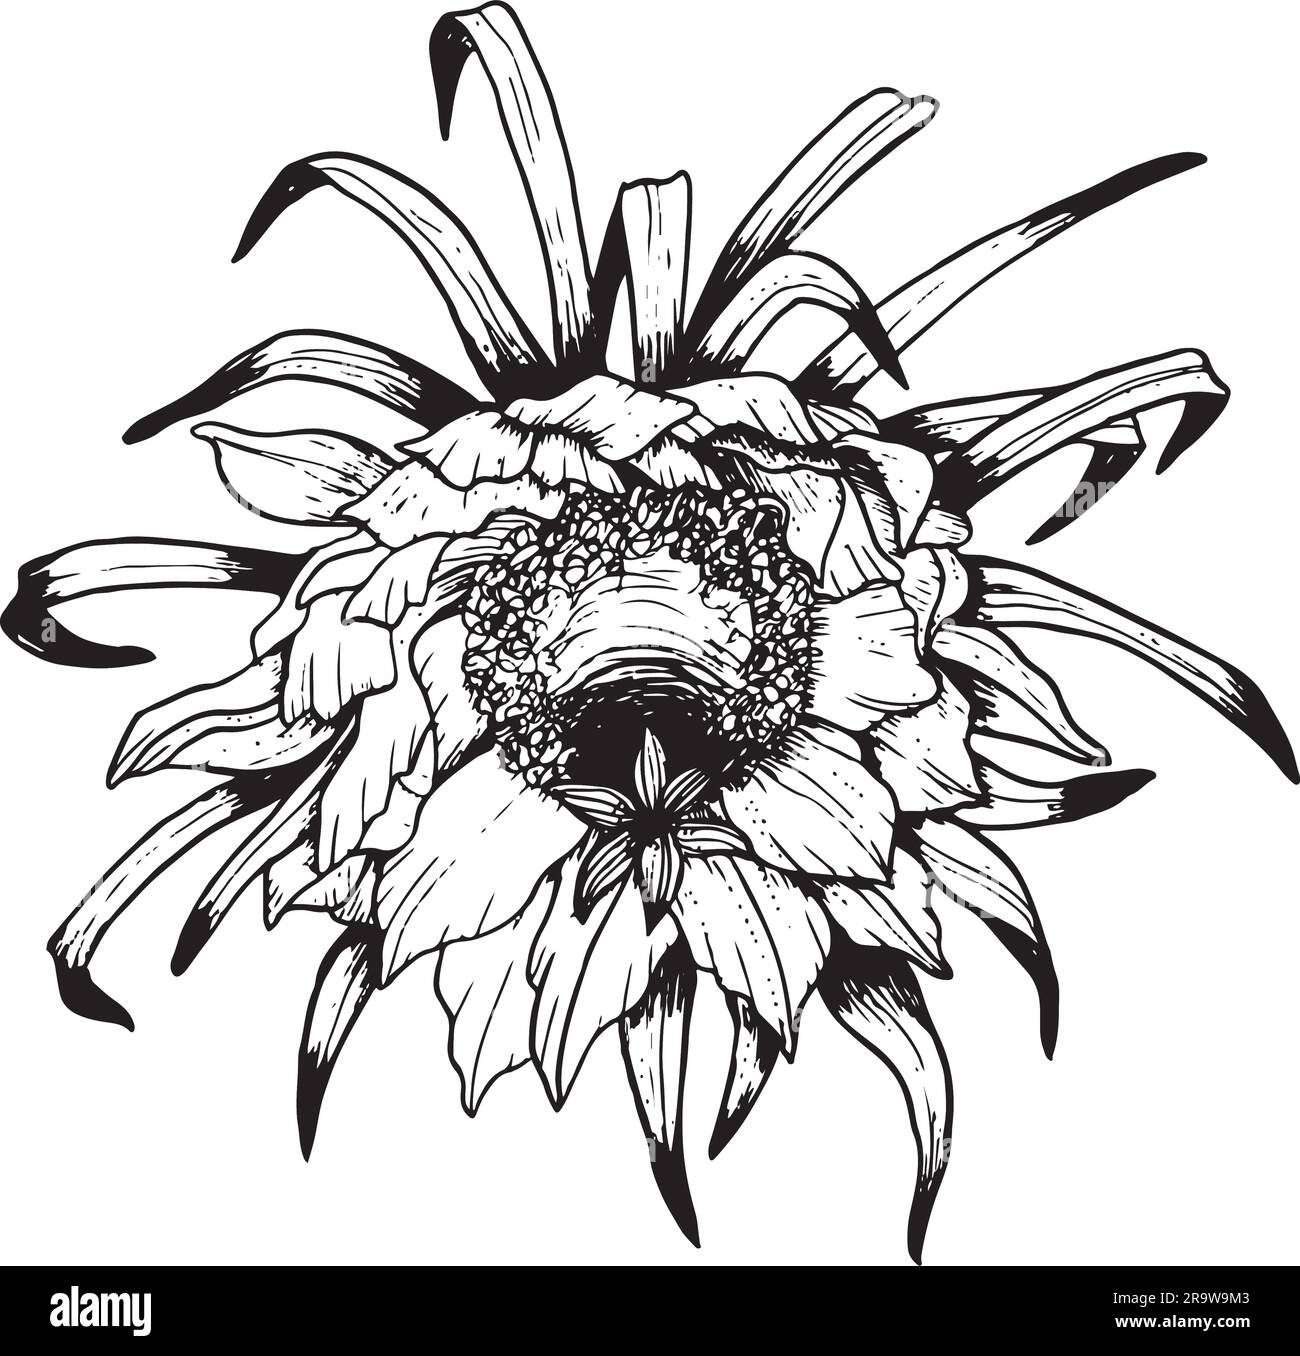 Vista frontale del fiore del cactus di Epiphyllum Vector. Illustrazione a linee in bianco e nero o grafica a fiori da frutto di drago Illustrazione Vettoriale